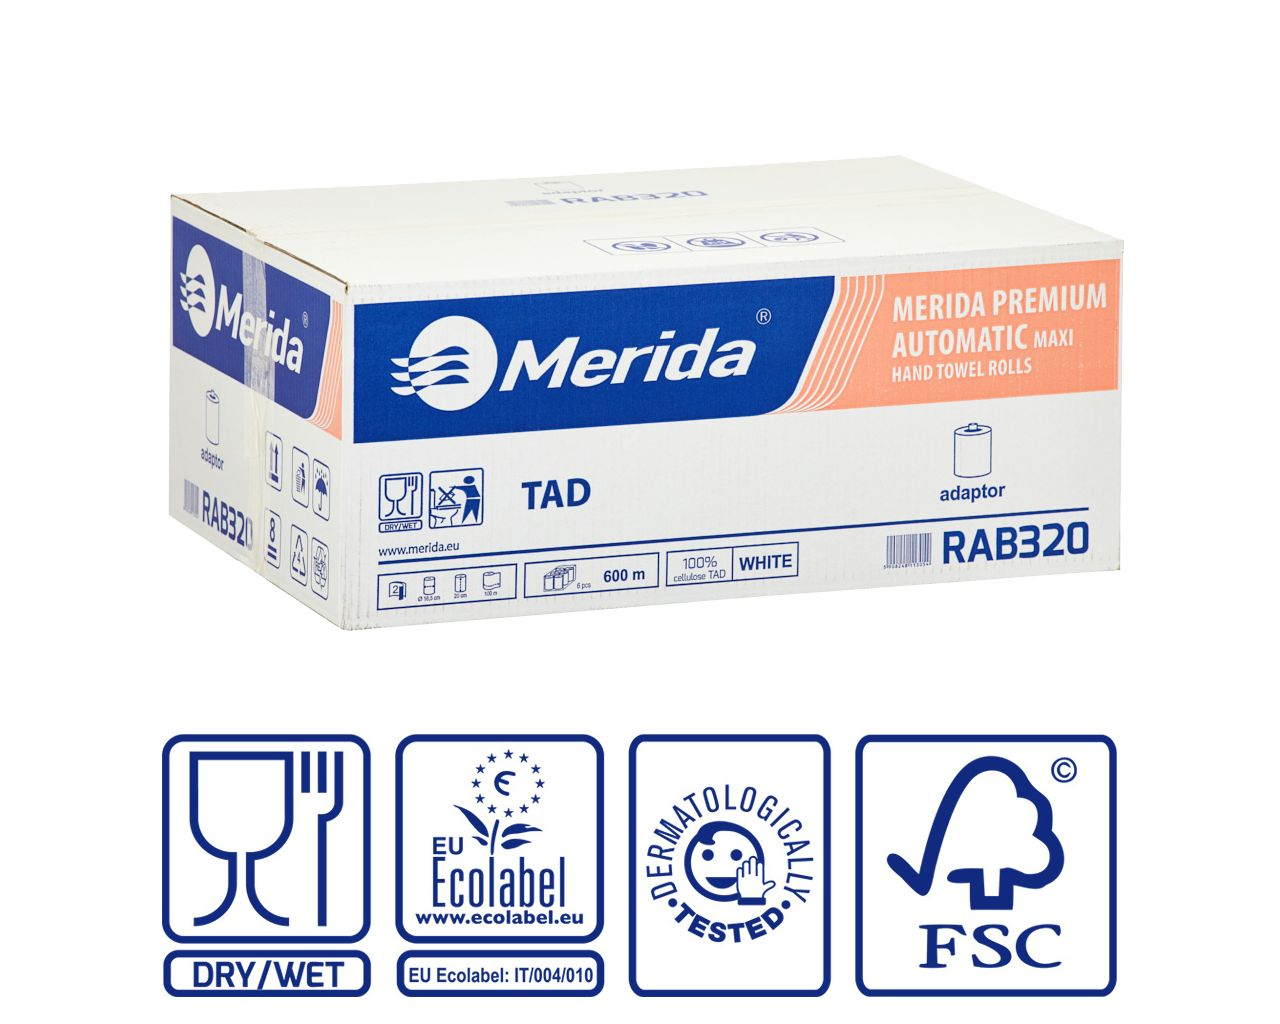 Ręczniki w roli z adaptorem MERIDA PREMIUM TAD AUTOMATIC MAXI, białe, celulozowe, dwuwarstwowe, karton 6 rolek, 600 m